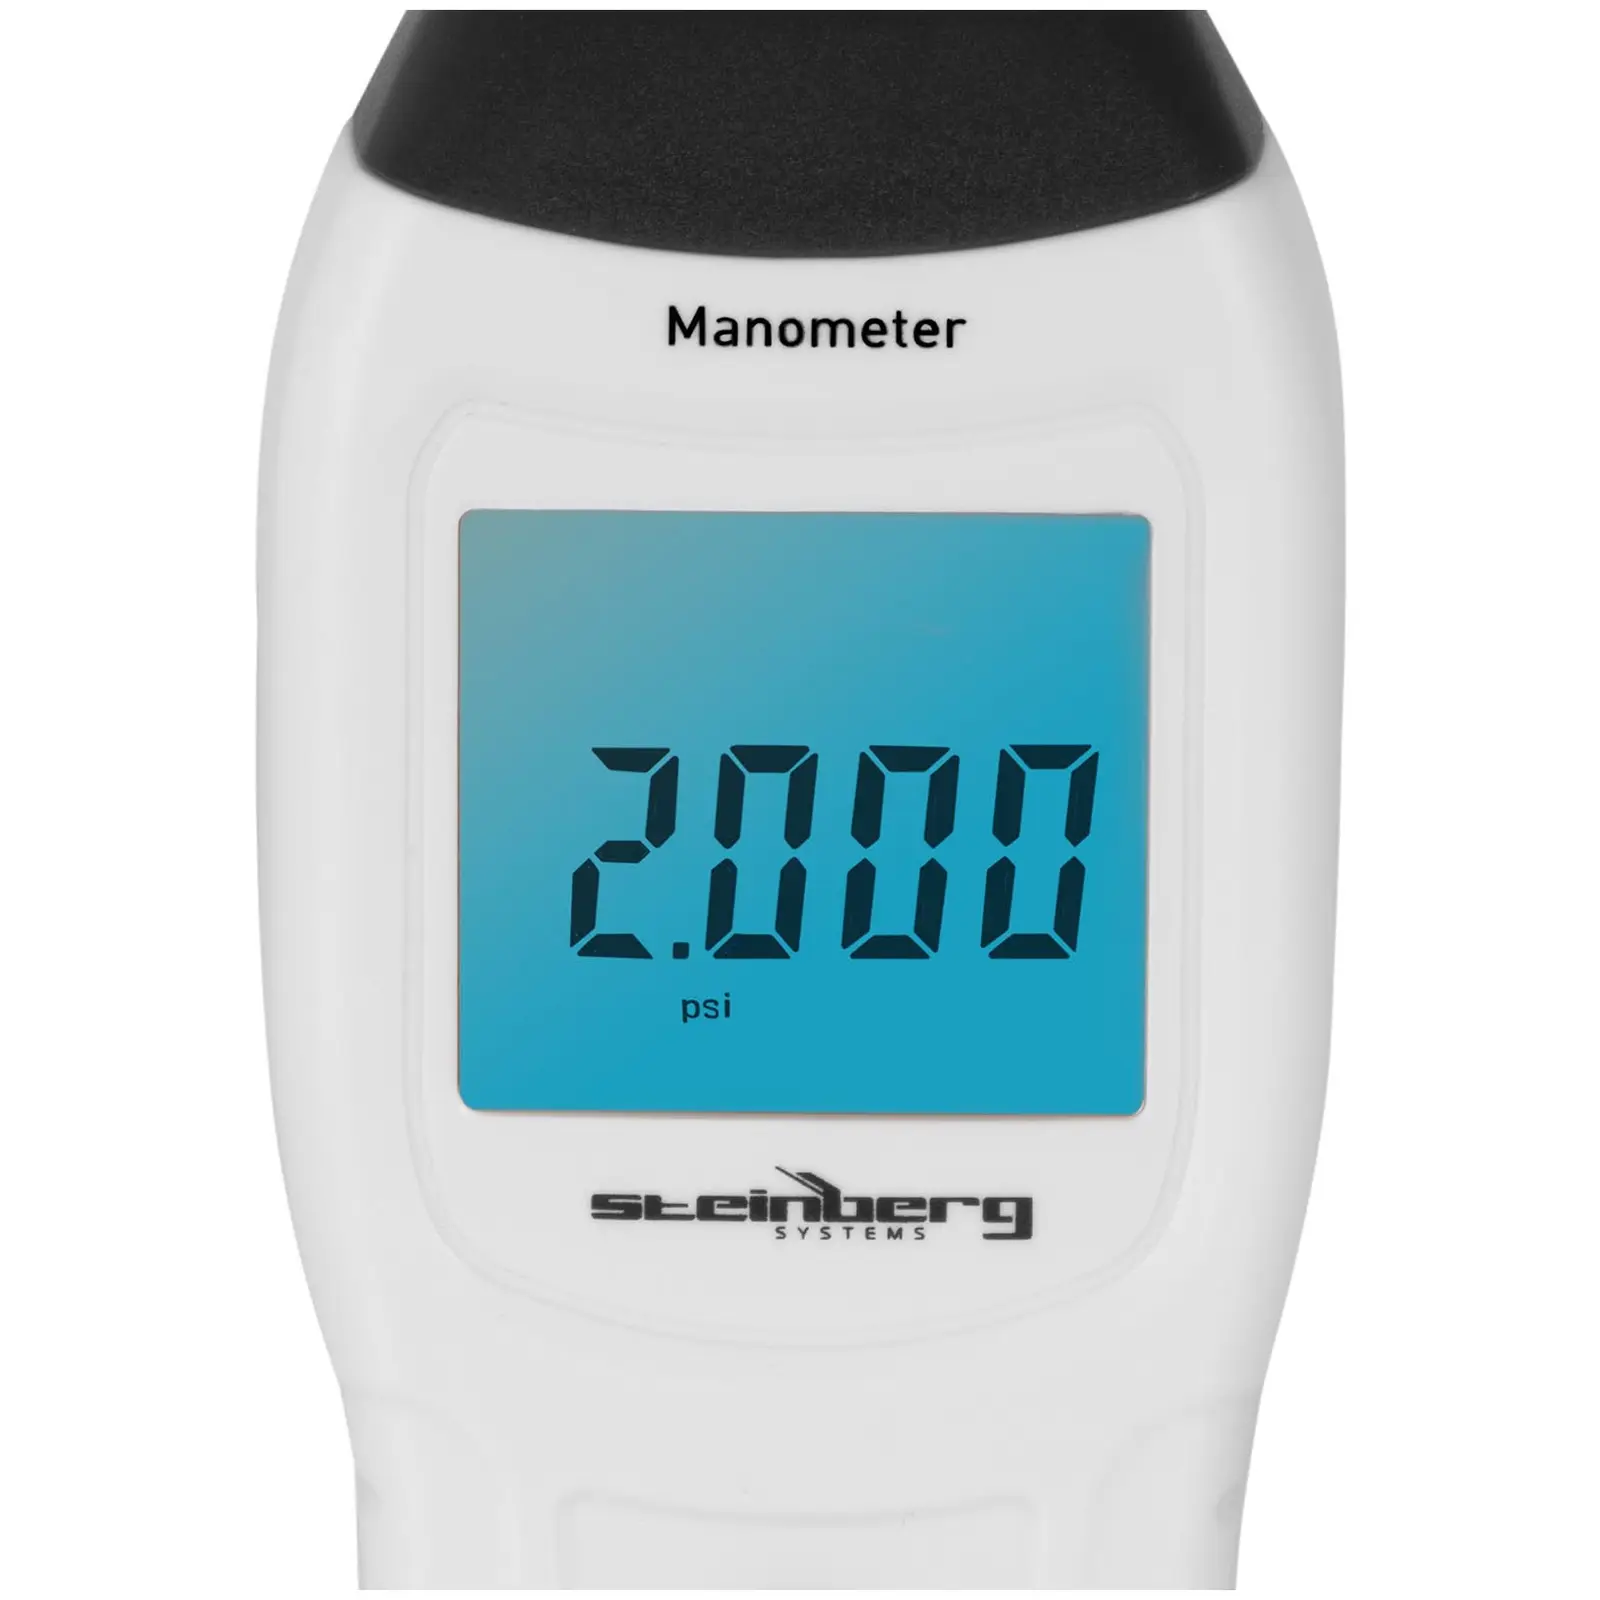 Manometer - digital manometer - 0.3%